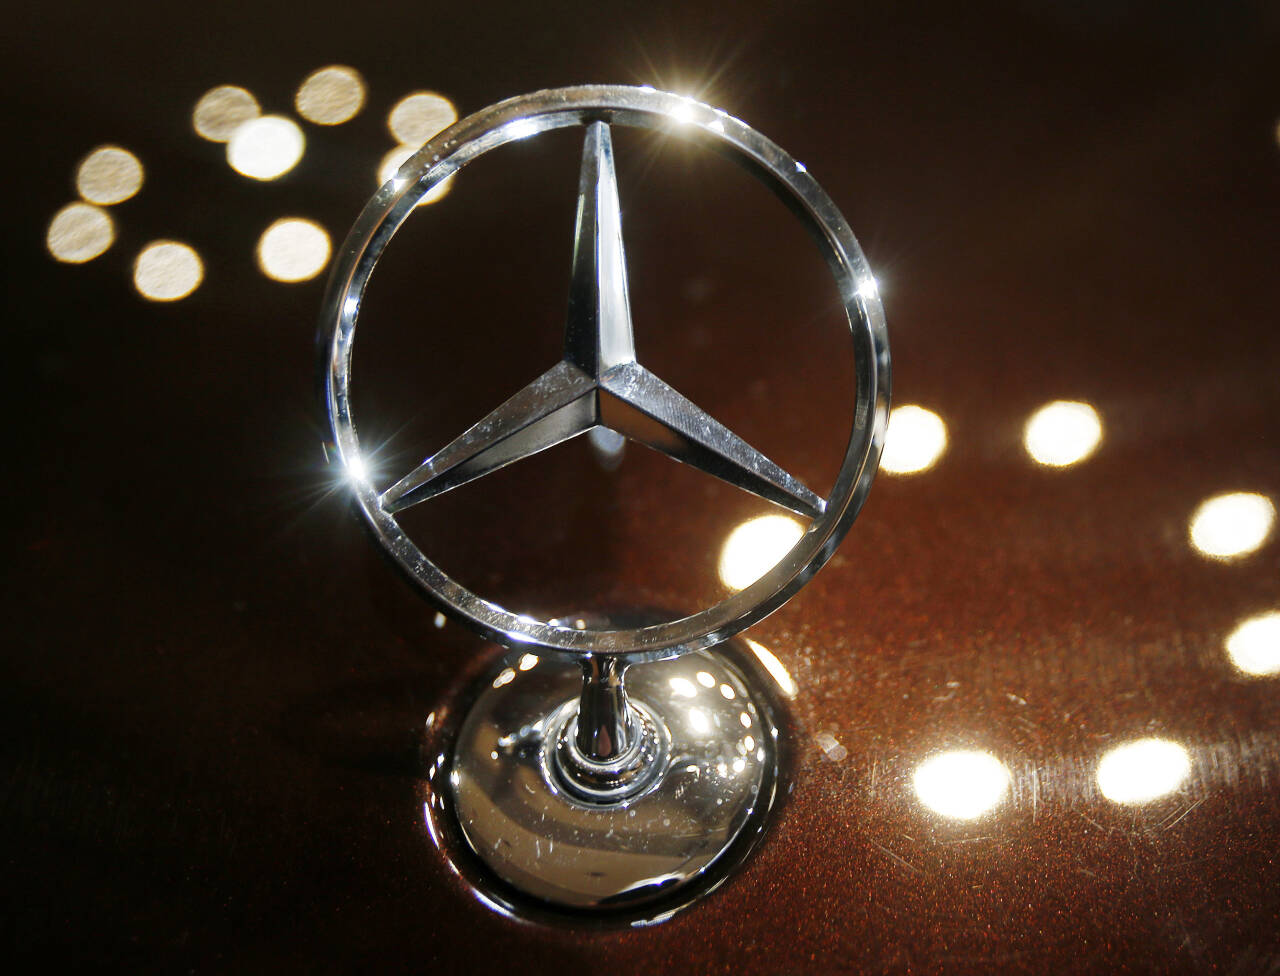 Den velkjente Mercedes-stjernen skal om få år utelukkende pryde elbiler, lover Daimler. Foto: AP / NTB